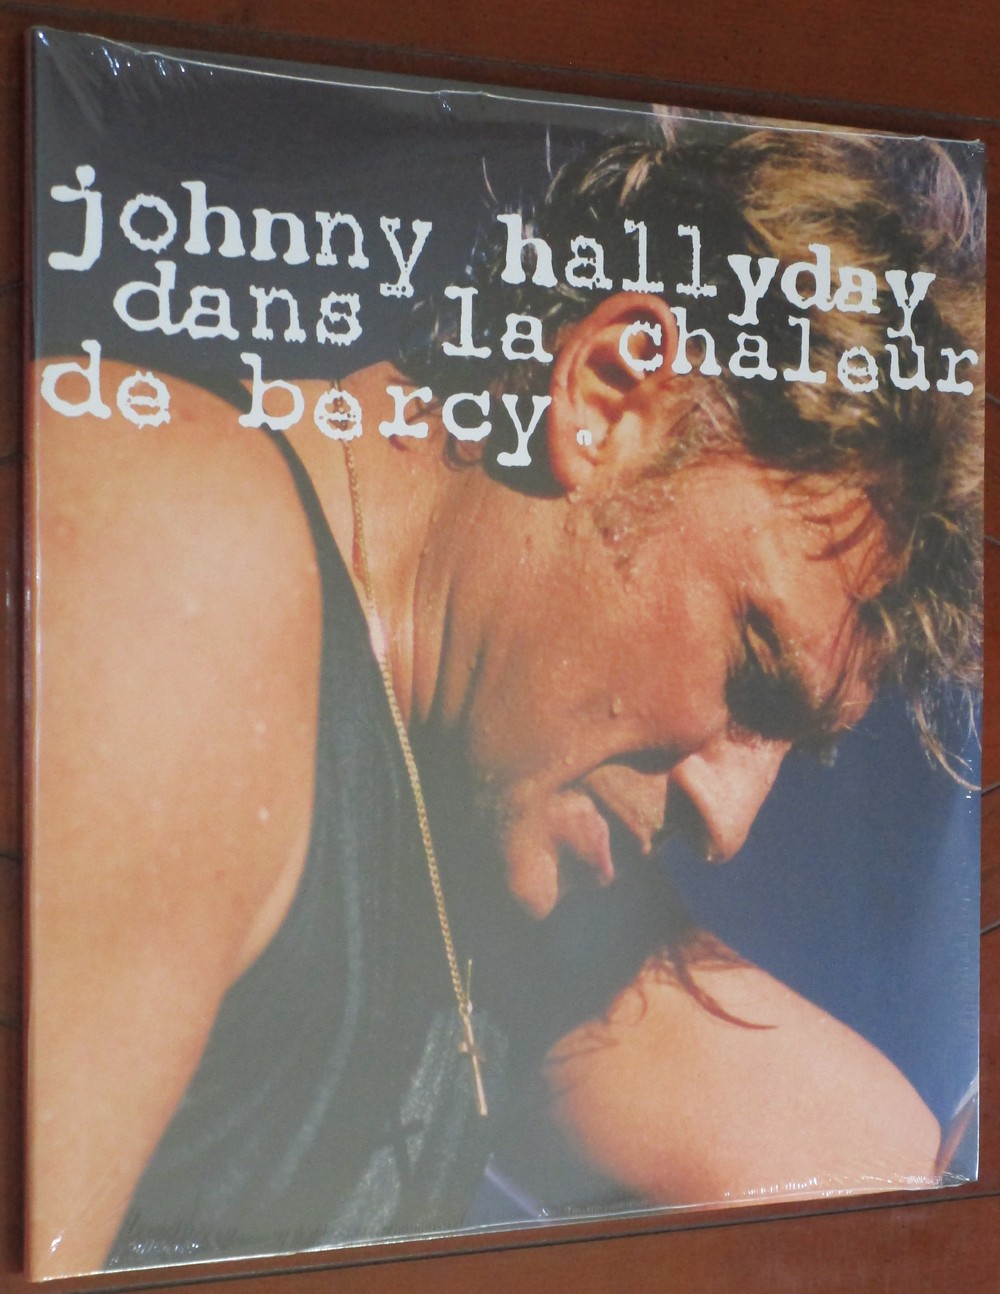 Hachette: Les vinyles de légende n°26     DANS LA CHALEUR DE BERCY     2LP 005-da17